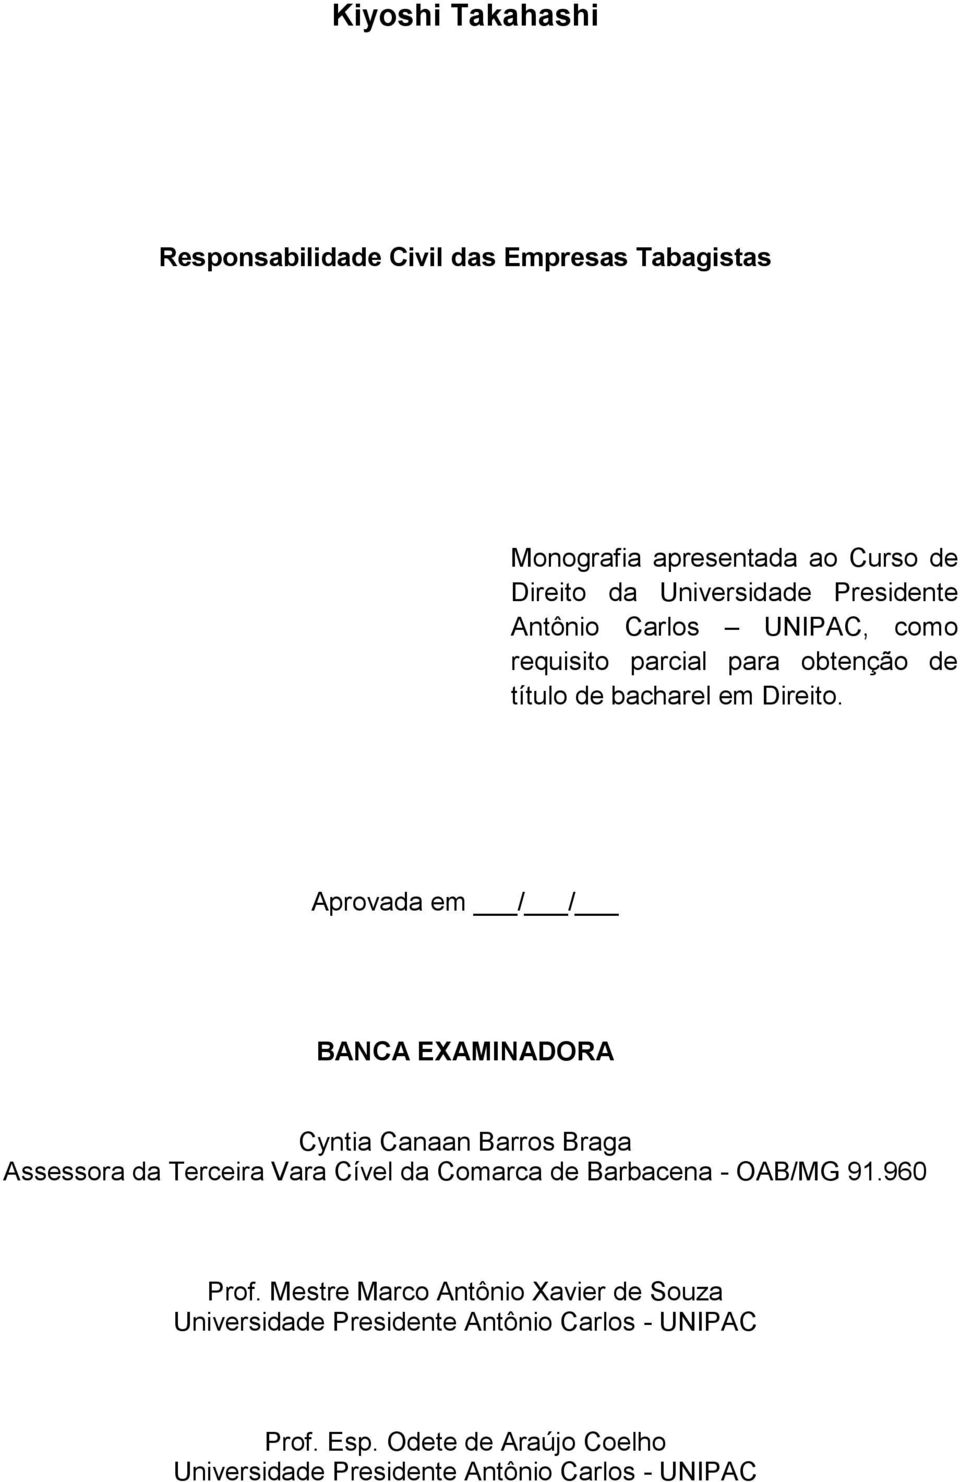 Aprovada em / / BANCA EXAMINADORA Cyntia Canaan Barros Braga Assessora da Terceira Vara Cível da Comarca de Barbacena - OAB/MG 91.